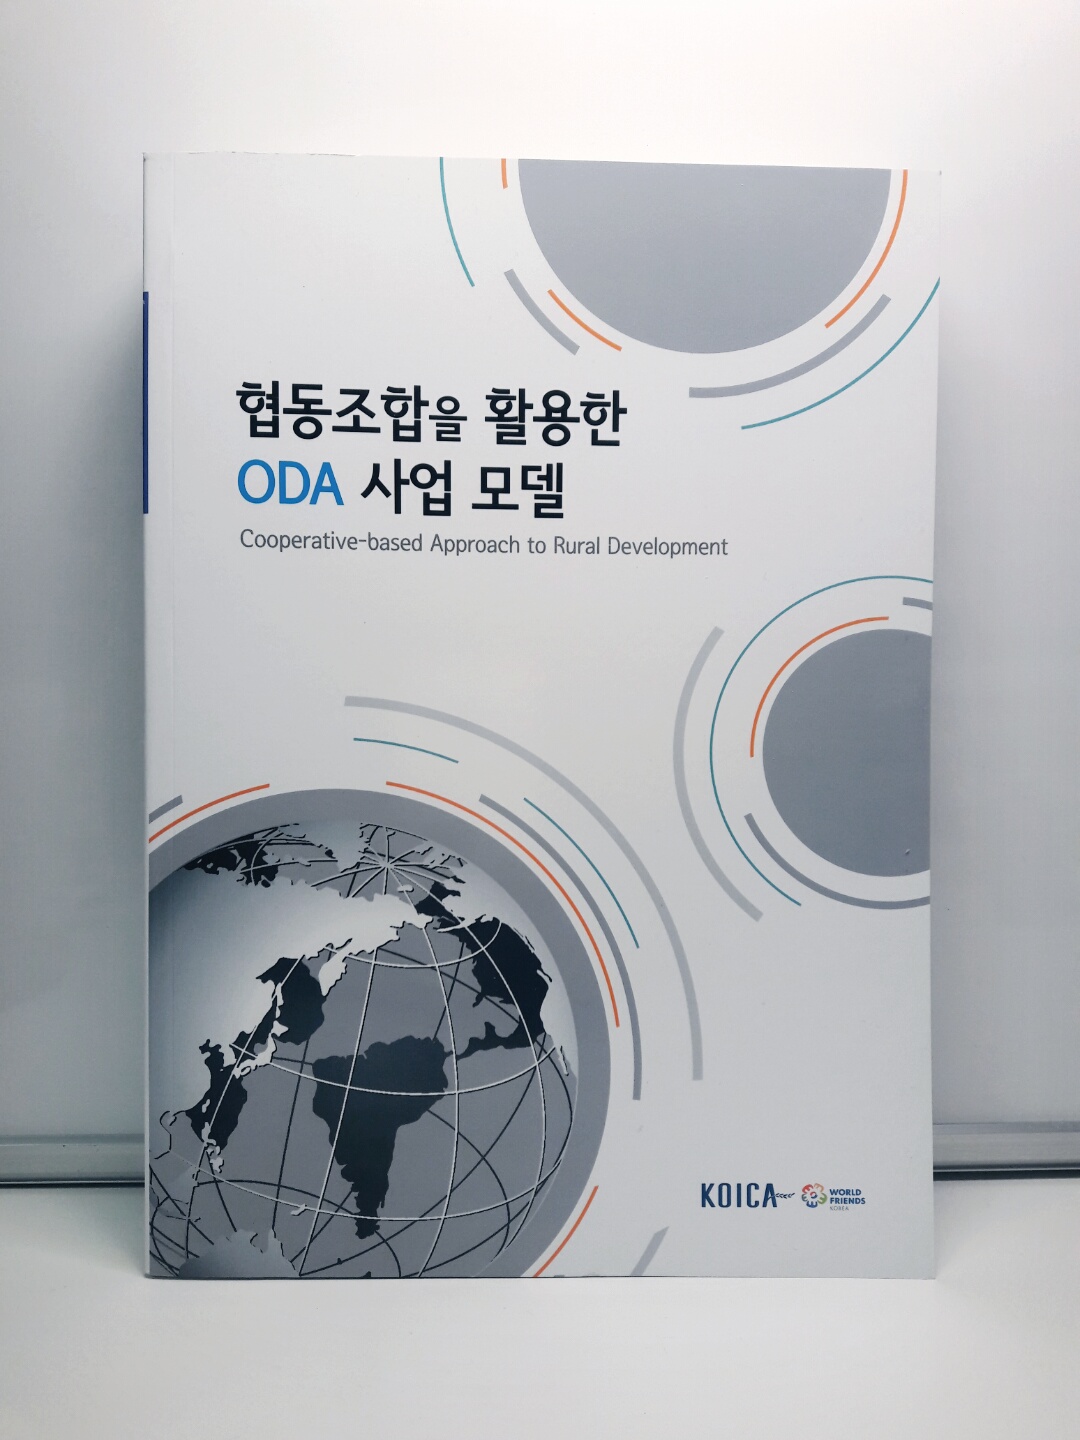 협동 조합을 활용한 ODA 사업 모델